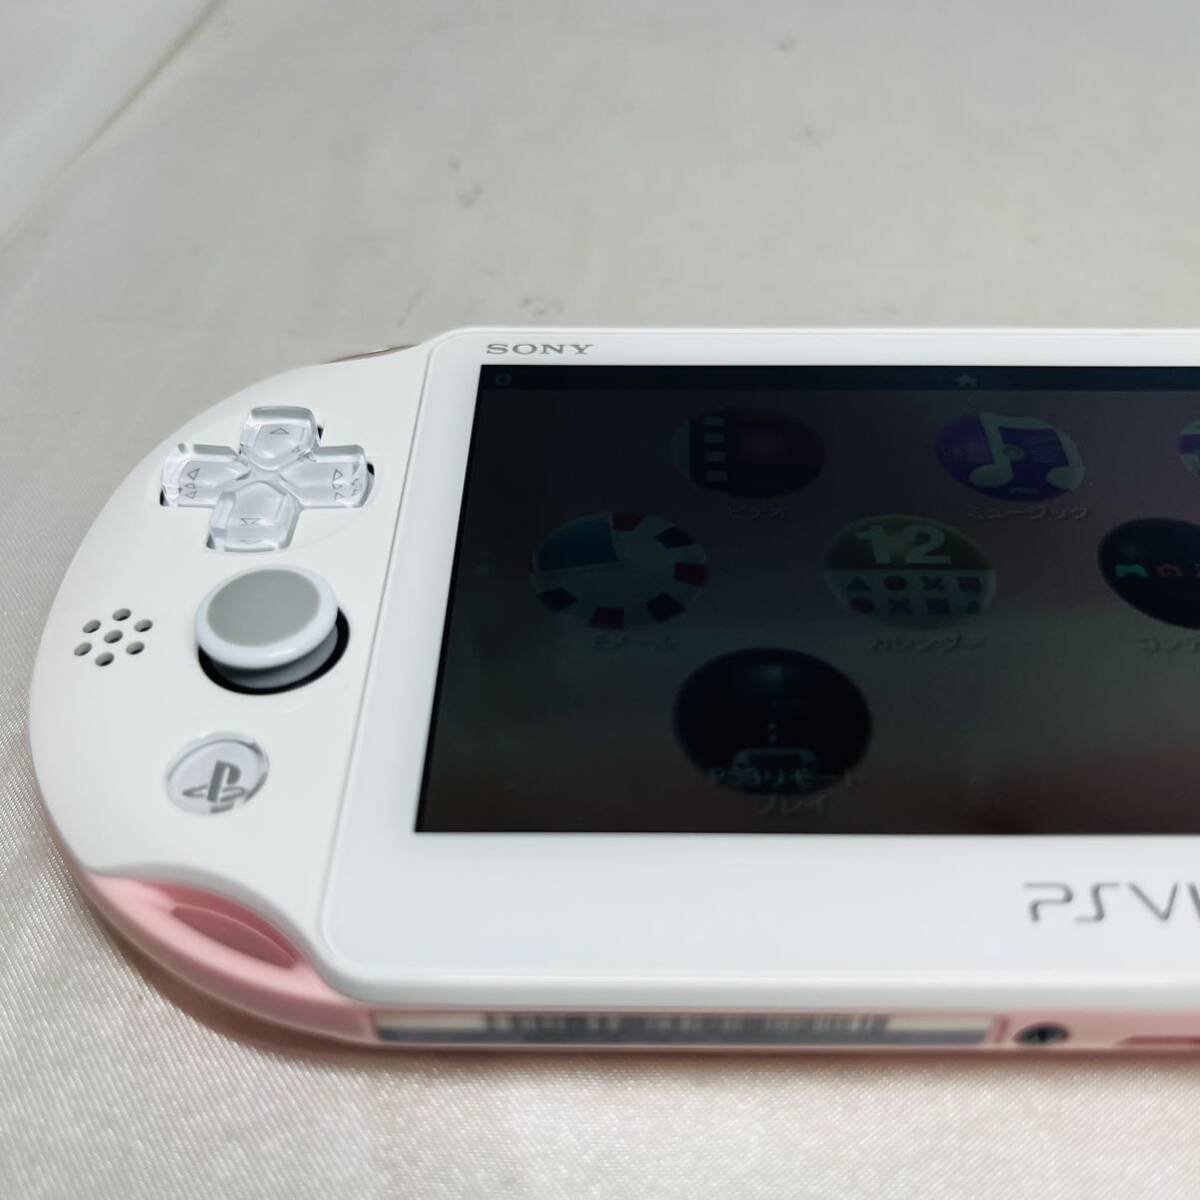 ★1円〜美品 動作確認済 SONY PS Vita PCH-2000ZA19 ライトピンク ホワイトWi-Fiモデル 本体 light pink white FW3.74